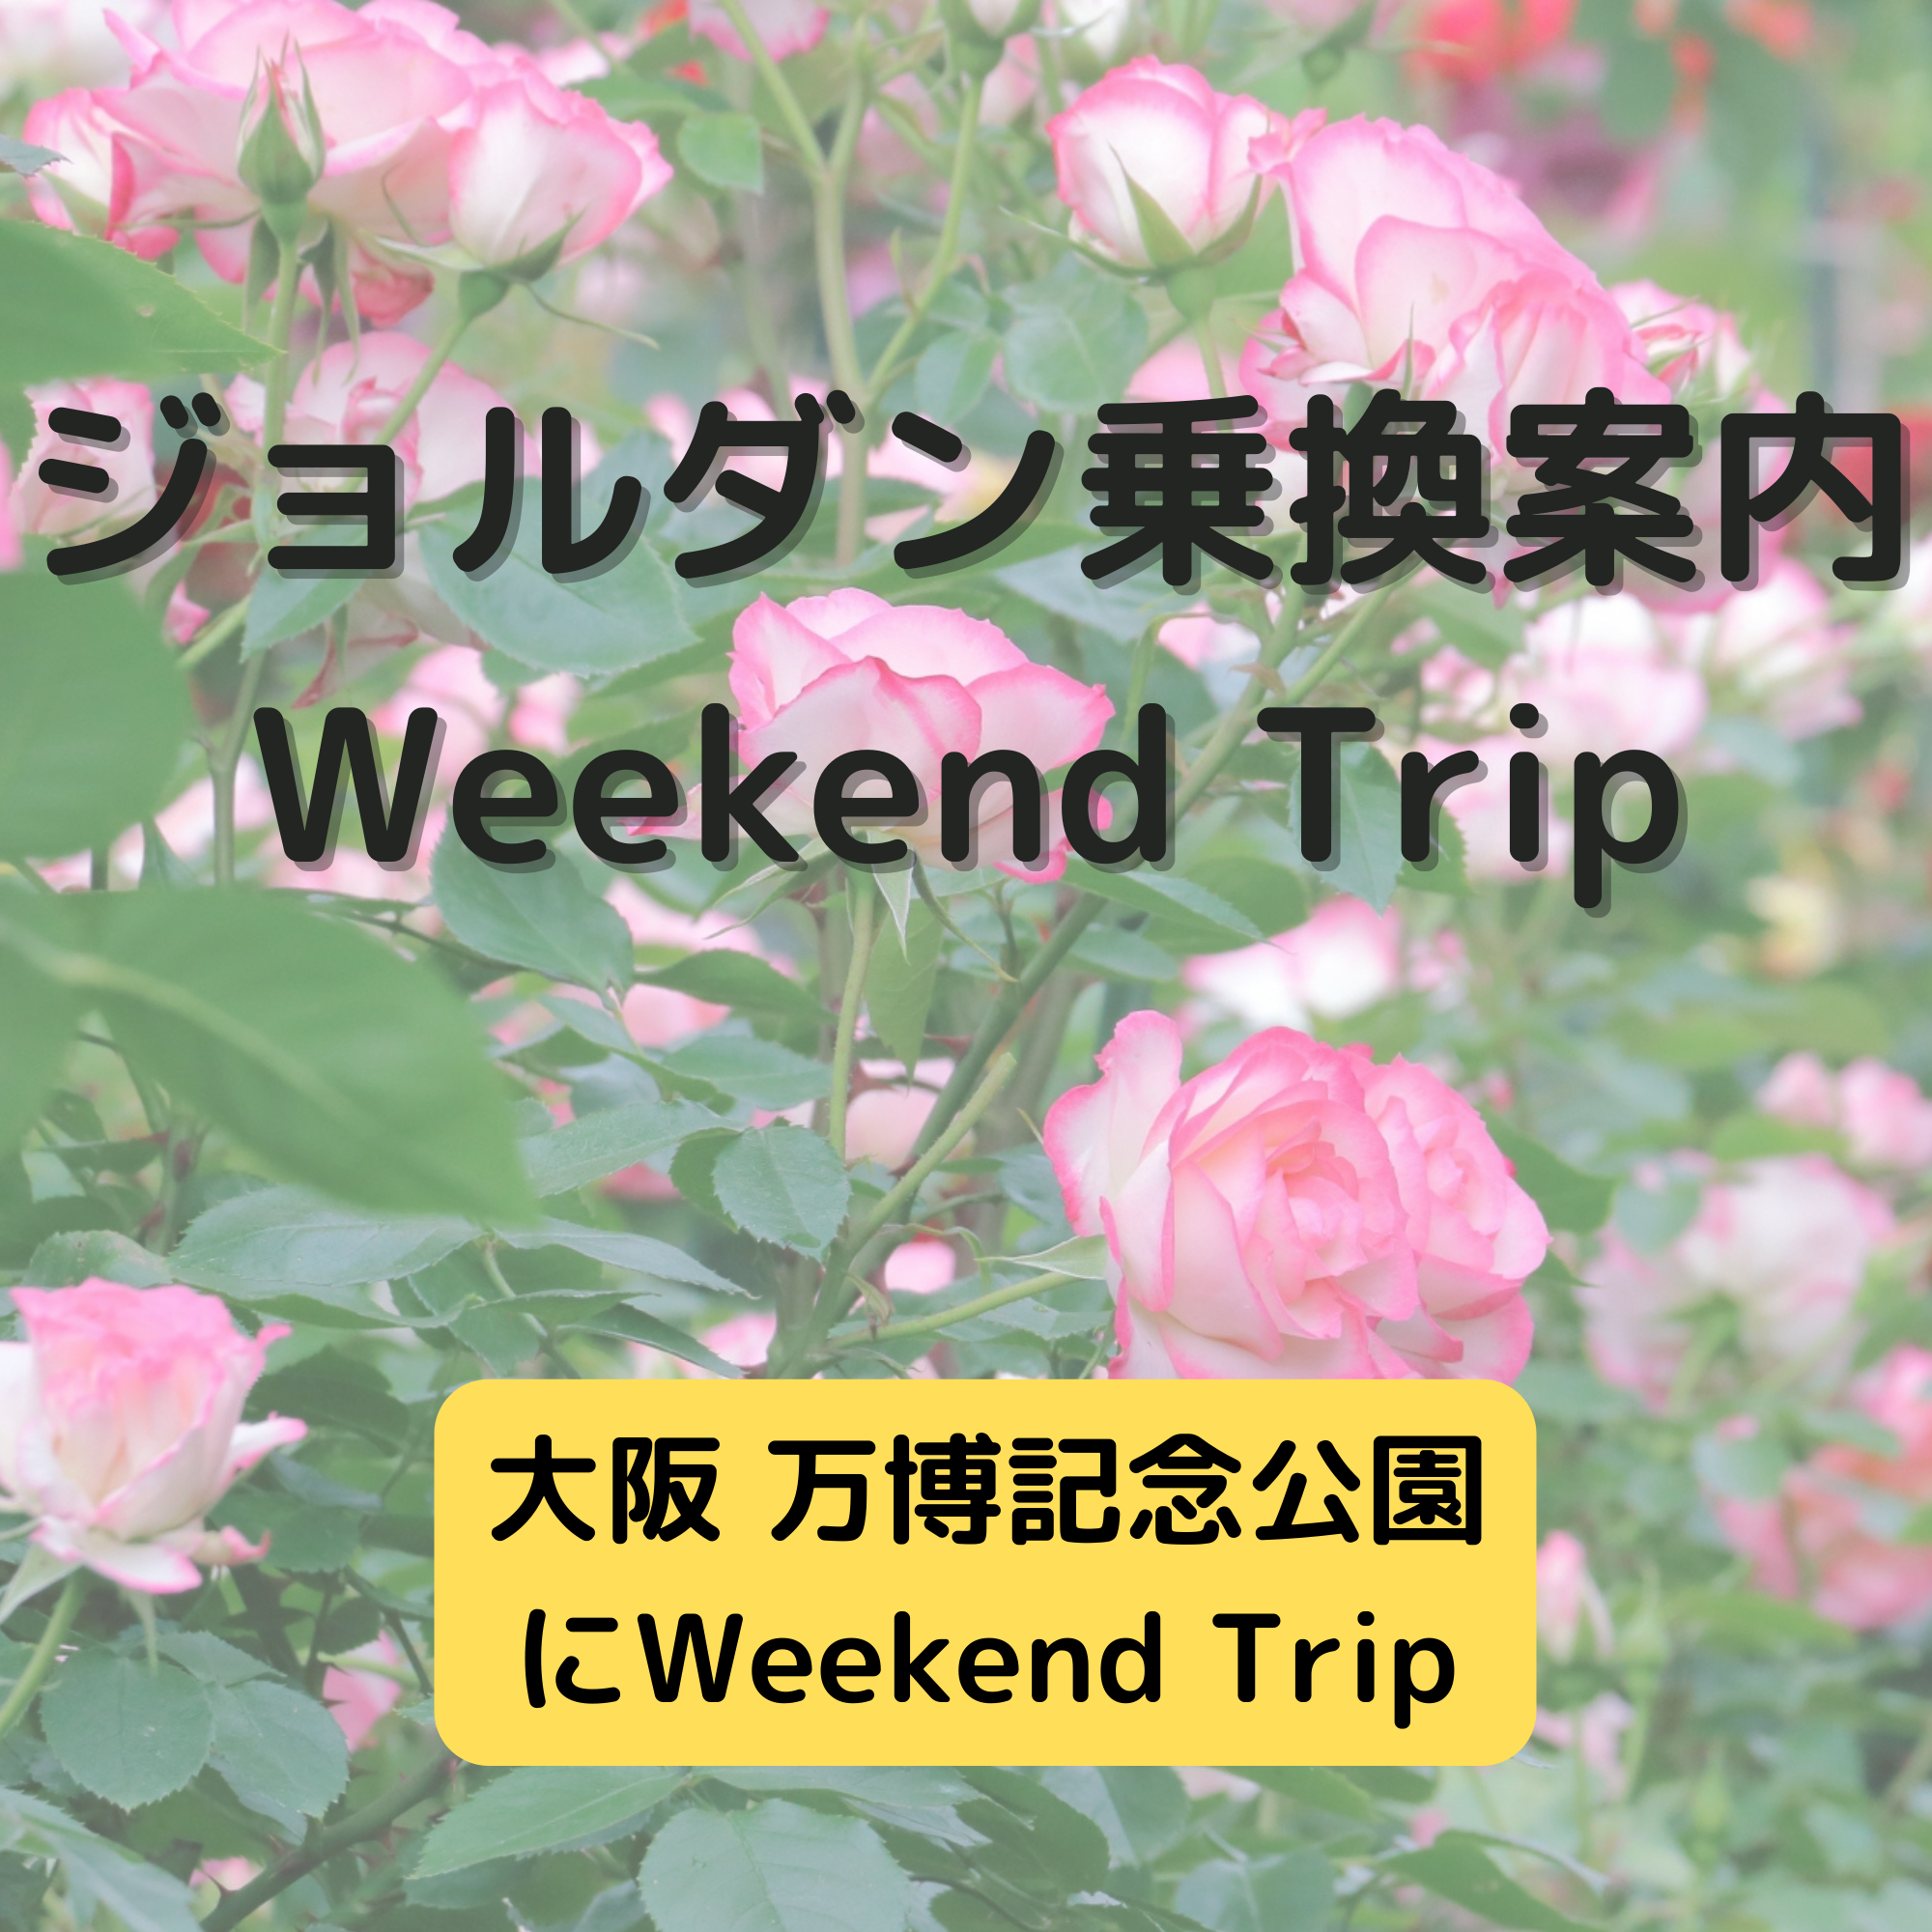 ジョルダン乗換案内　Weekend Trip-大阪 万博記念公園-